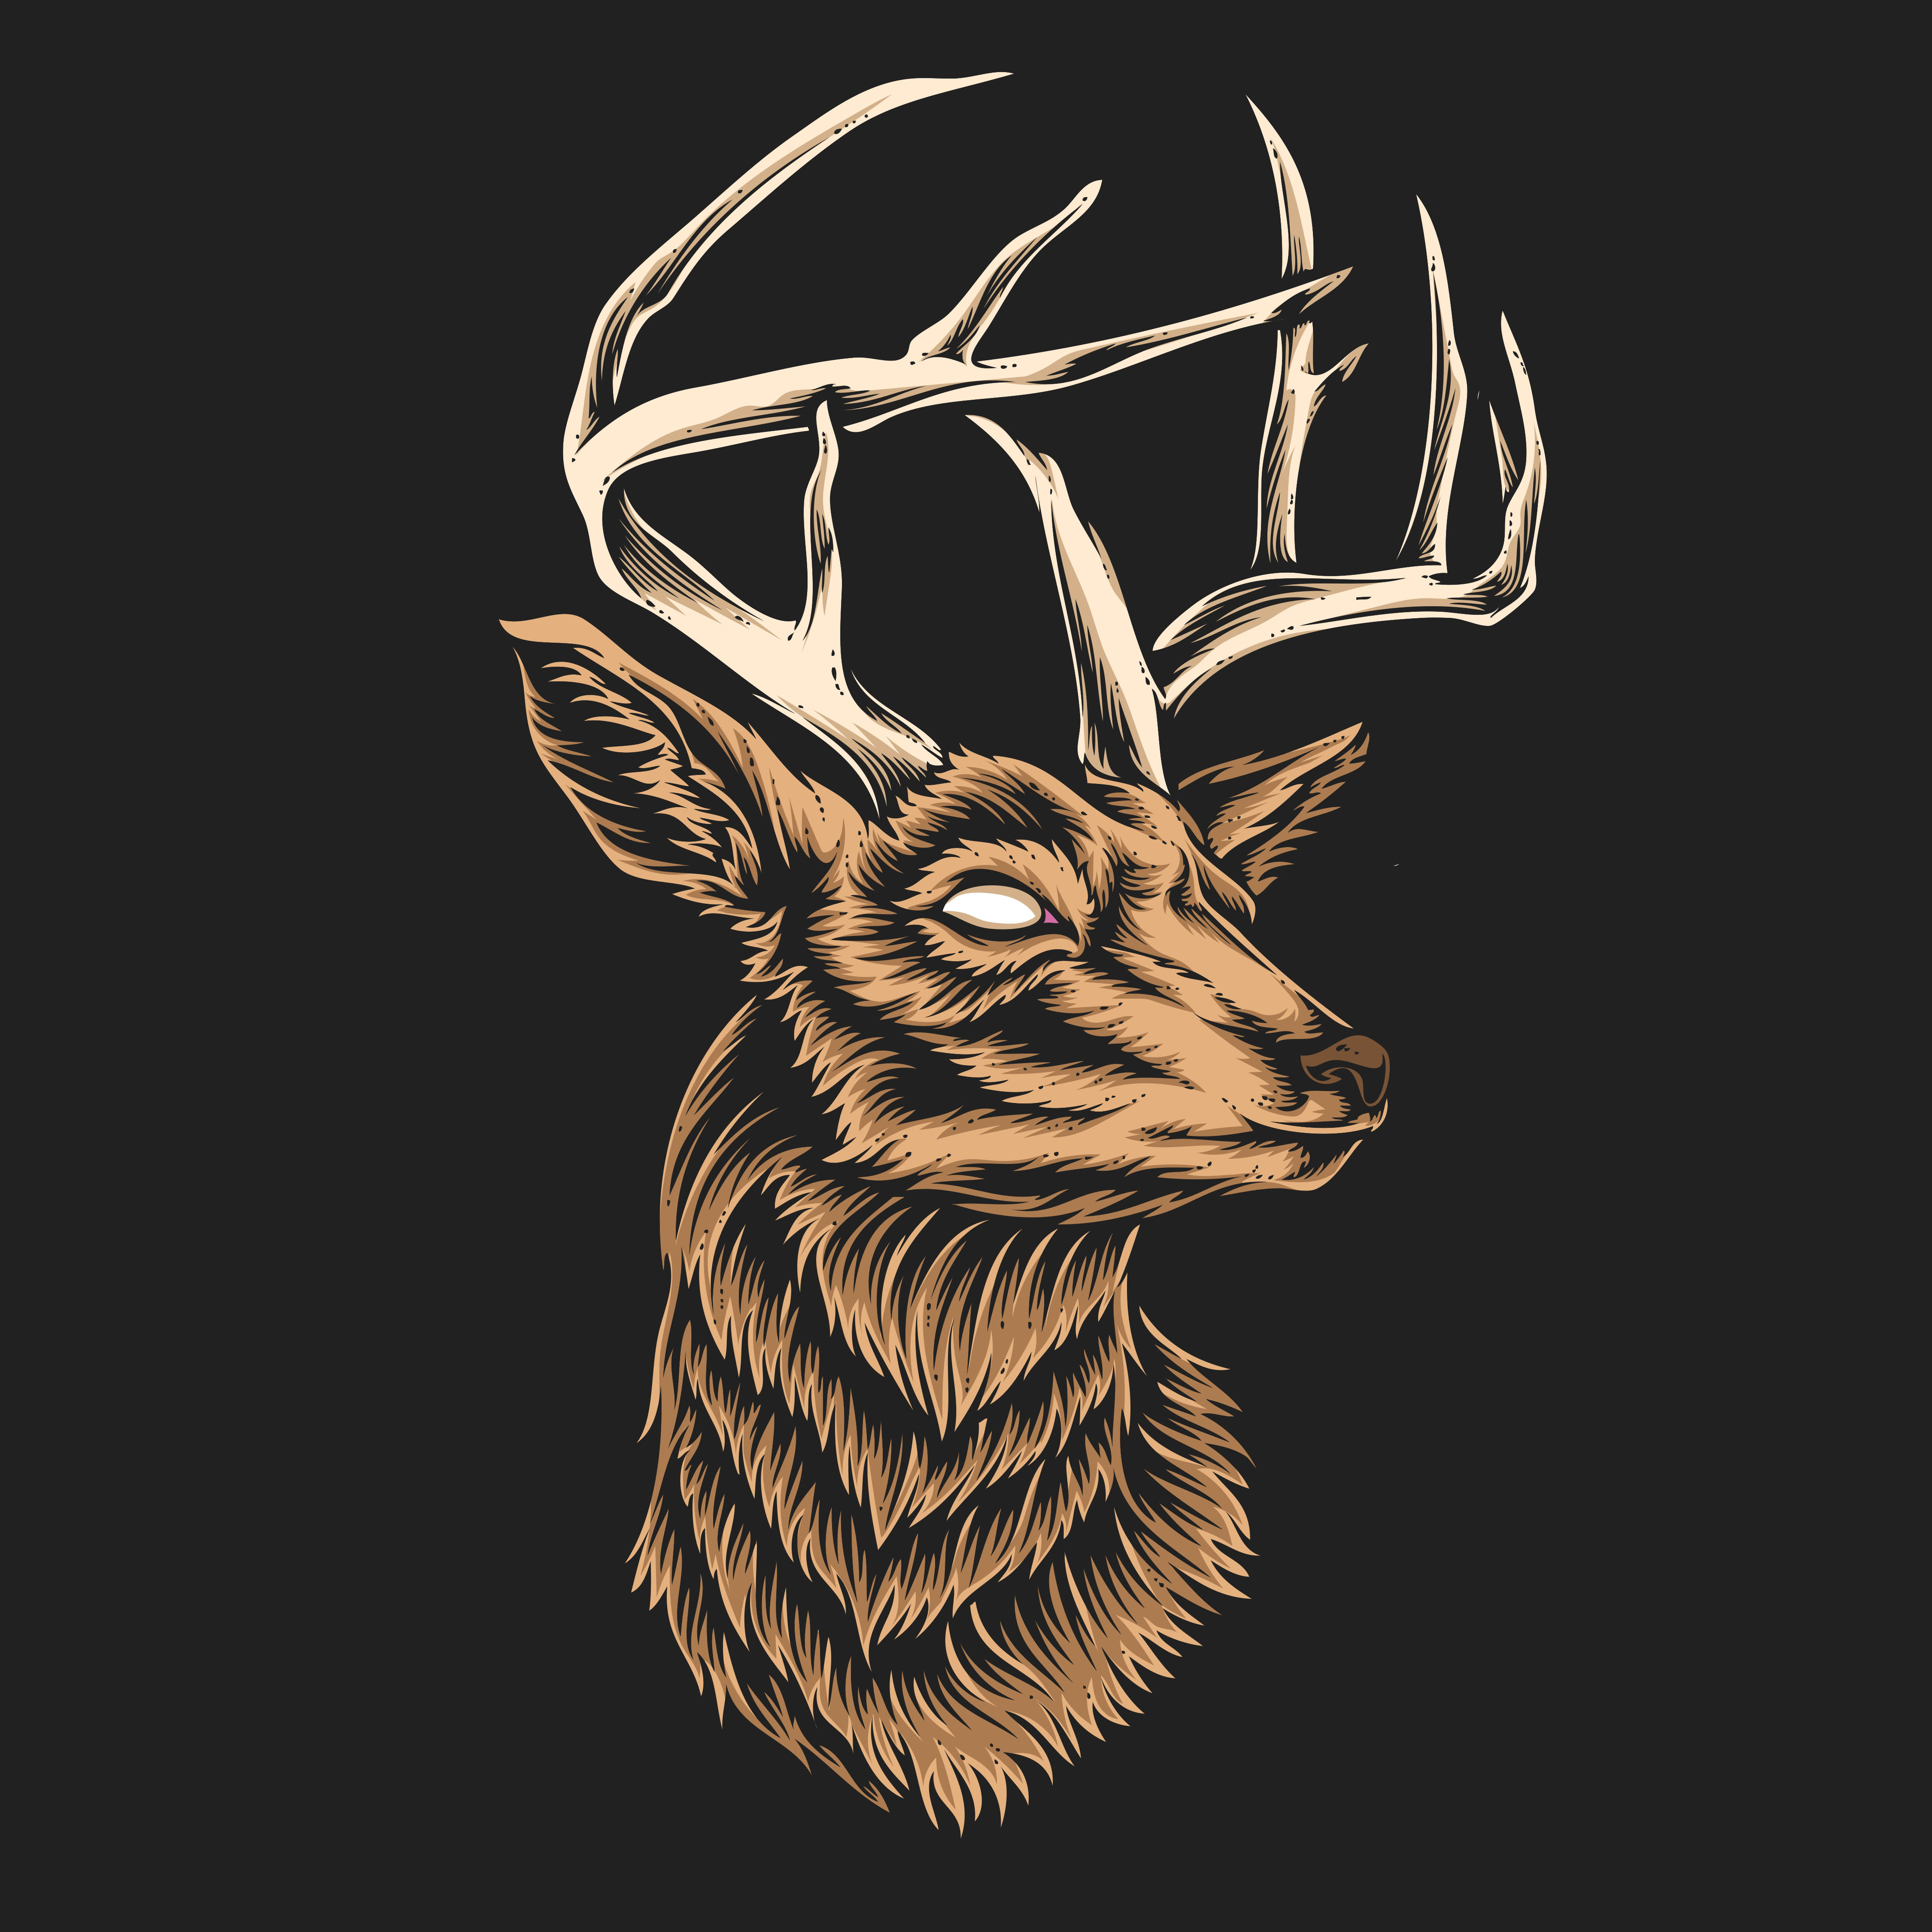 deer head vector - Download Free Vectors, Clipart Graphics & Vector Art